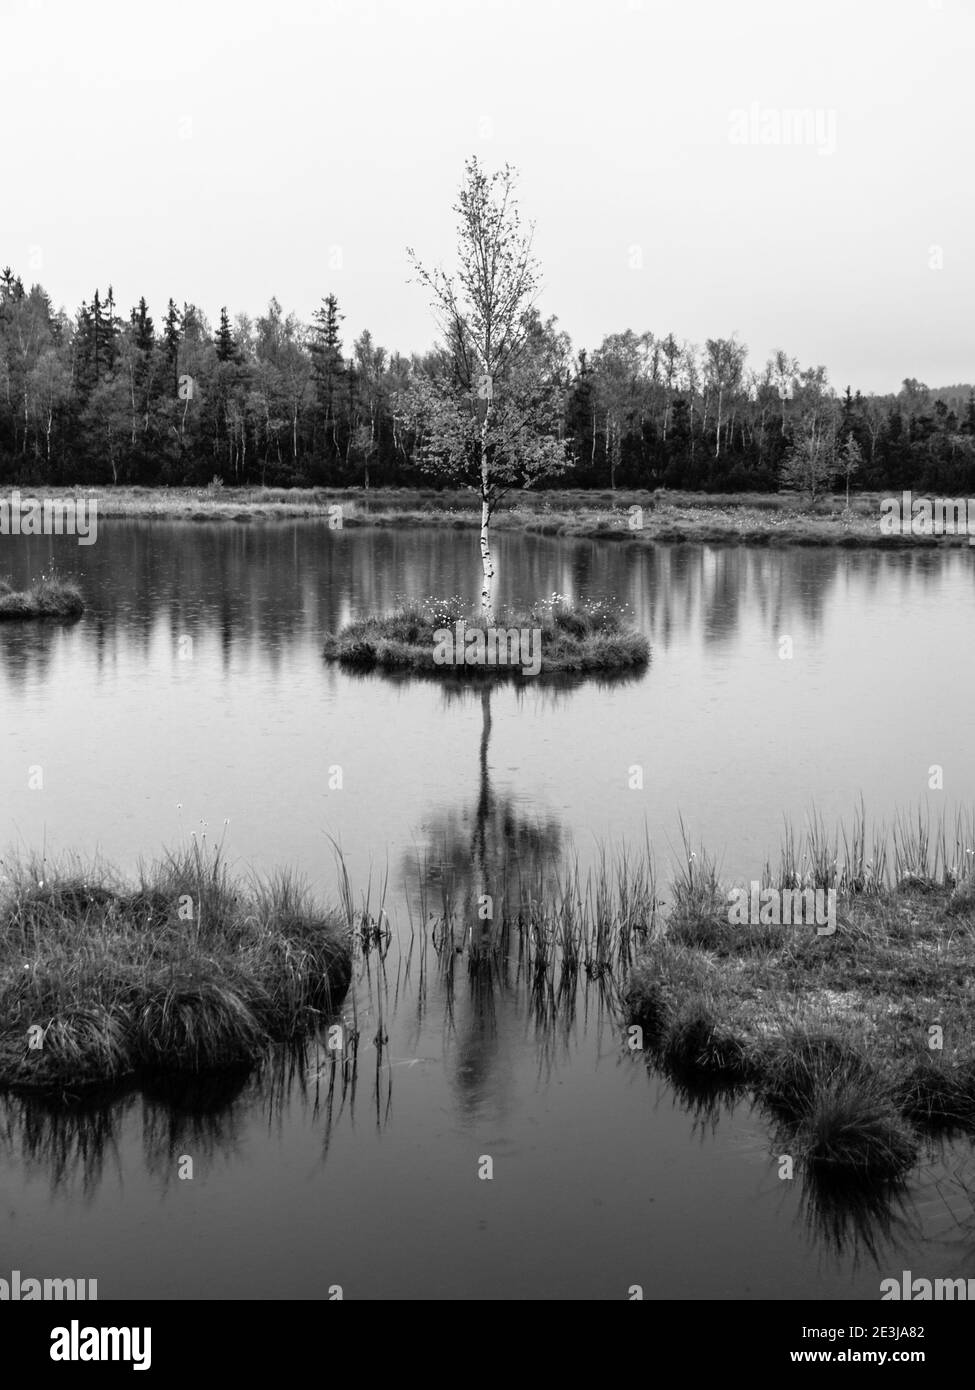 Abendzeit am Chalupska Moor See bei Borova Lada, Sumava Gebirge, Tschechien, Europa. Kleine Inseln mit Bäumen in der Mitte von Torfmoor. Schwarzweiß-Bild. Stockfoto